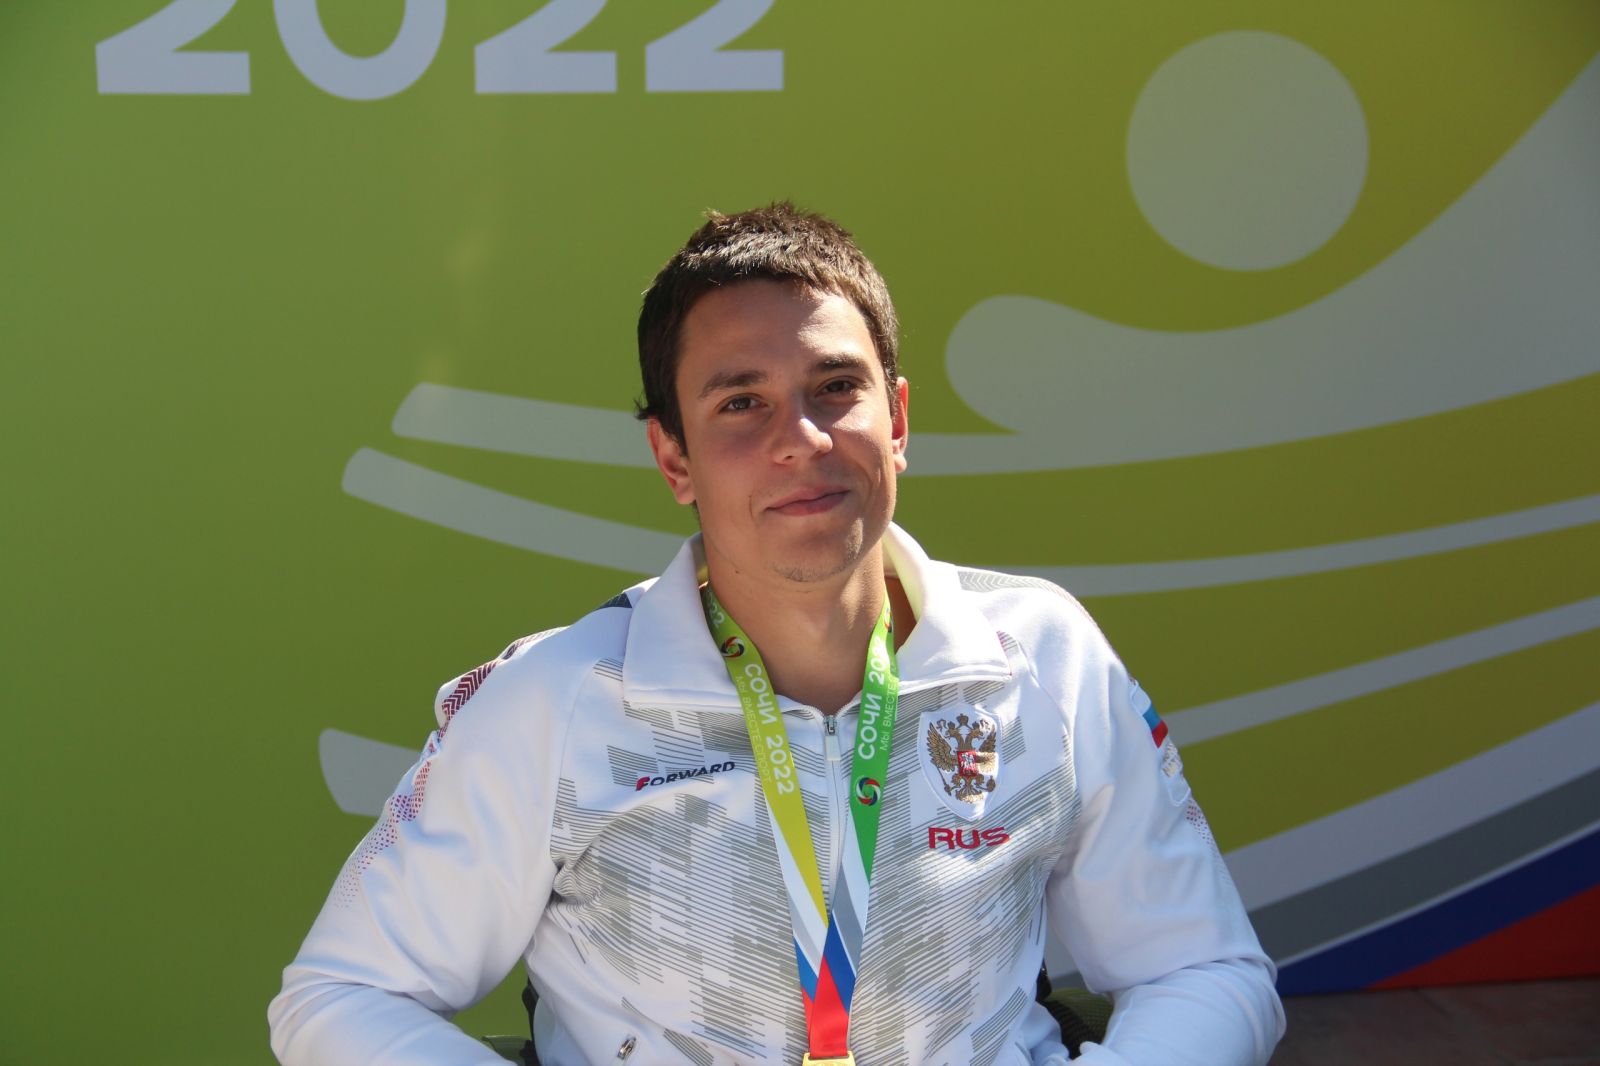 МАТЧ ТВ: Парапловец Жданов рассказал, зачем паралимпийцев разных классов сводят в один заплыв на летних играх в Сочи